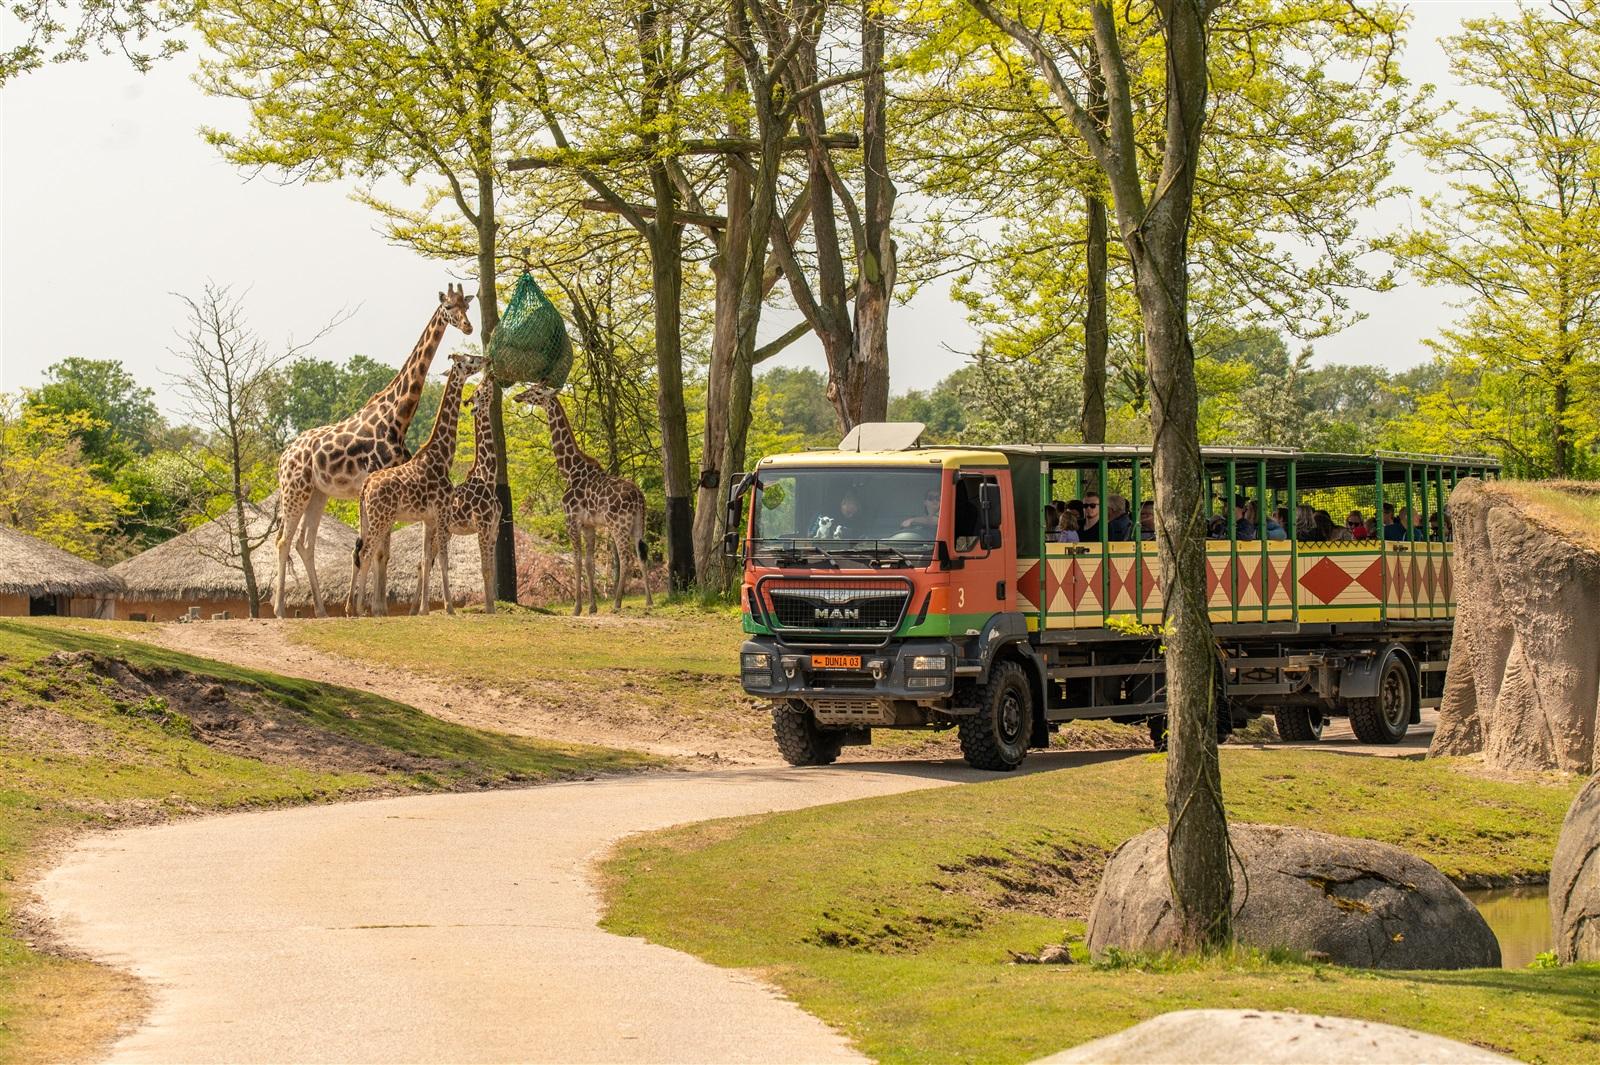 Safaribus die langs de giraffen in de savanne rijdt